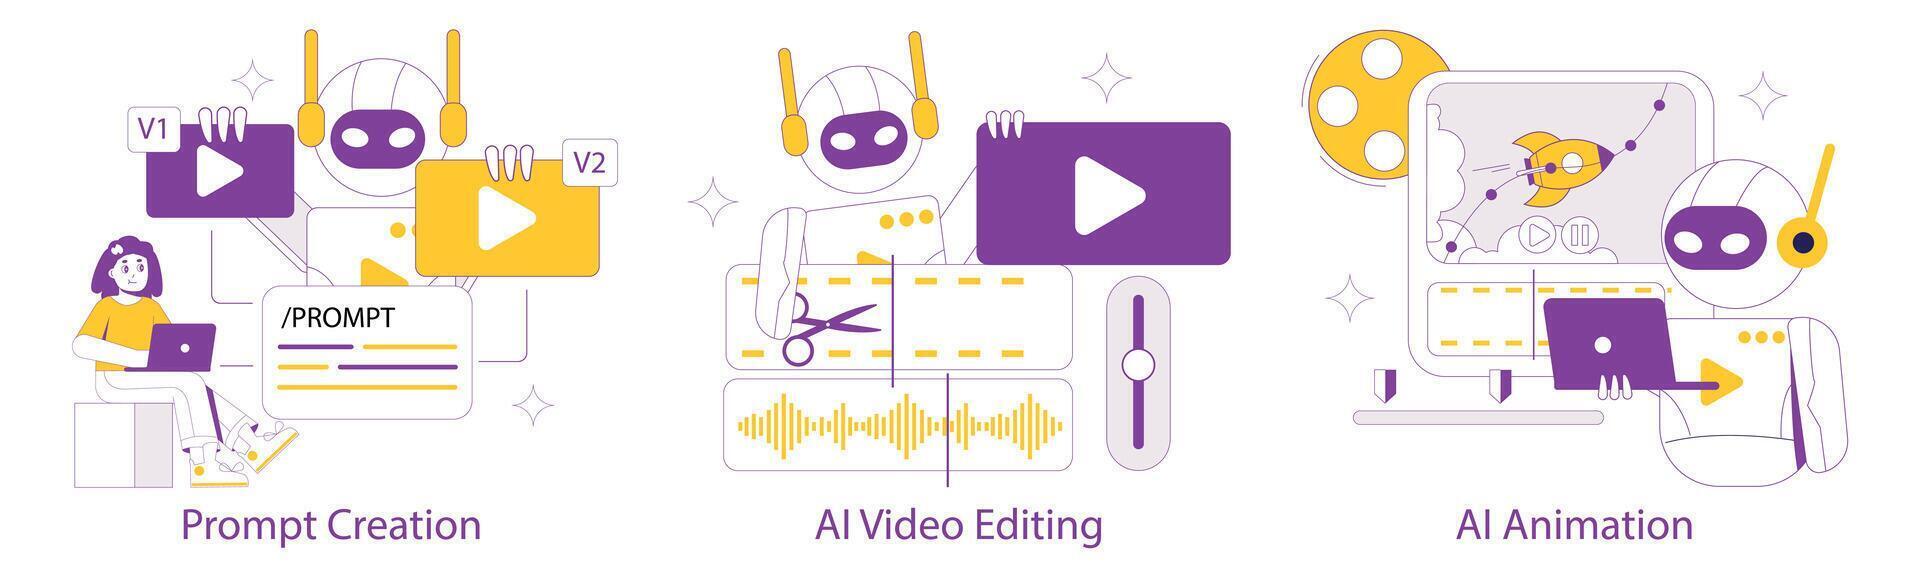 ai conteúdo criação definir. uma desatado processo a partir de escrevendo Comandos para vídeo edição e animação de ai. a futuro do digital contente. vetor ilustração.